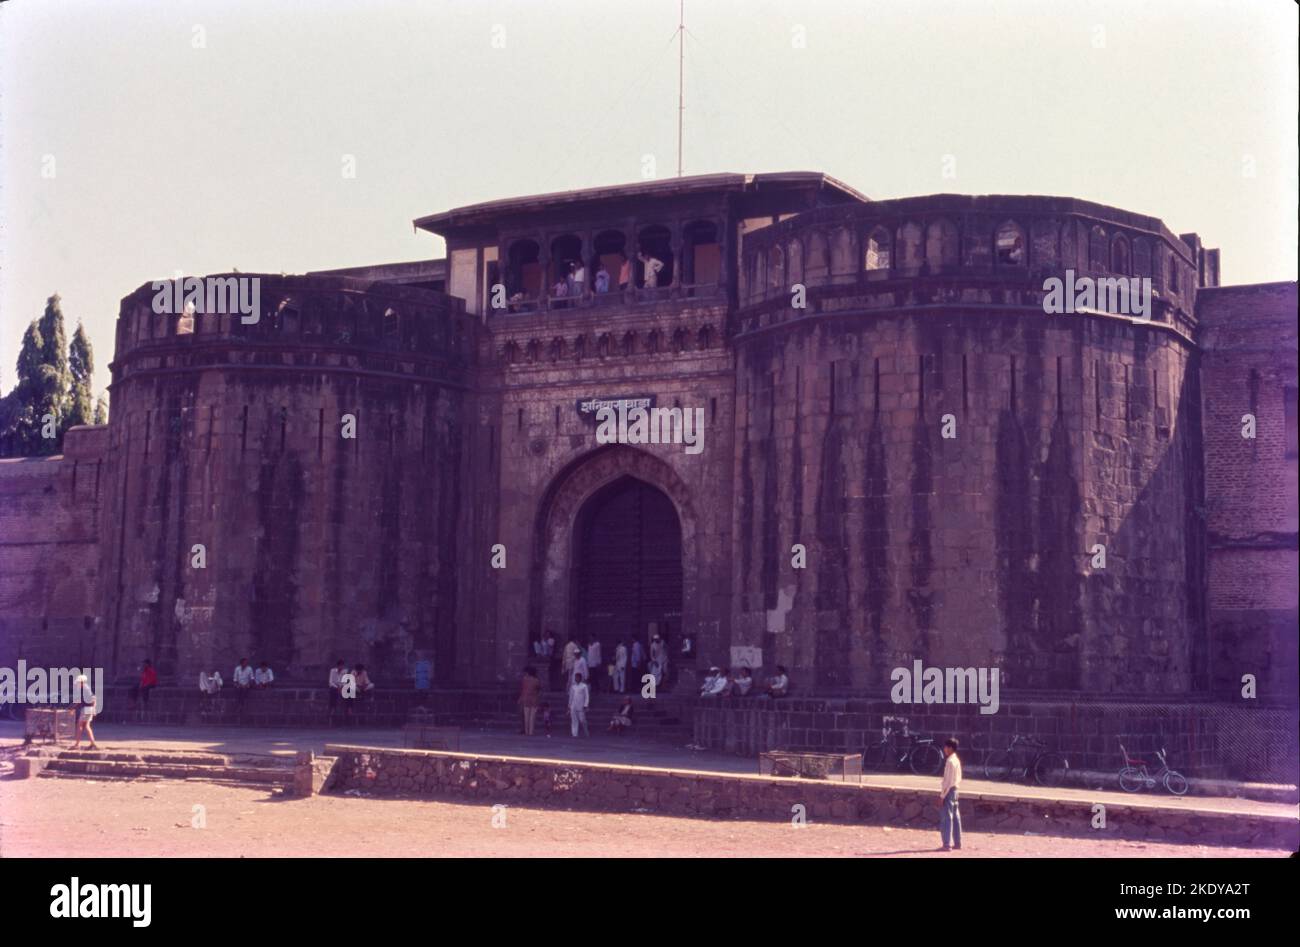 Shaniwar Wada è una fortificazione storica della città di Pune, India. Costruita nel 1732, fu la grande sede dei Peshwas dell'Impero Maratha fino al 1818. Dopo l'ascesa dell'Impero Maratha, il palazzo divenne il centro della politica indiana nel 18th ° secolo. Foto Stock